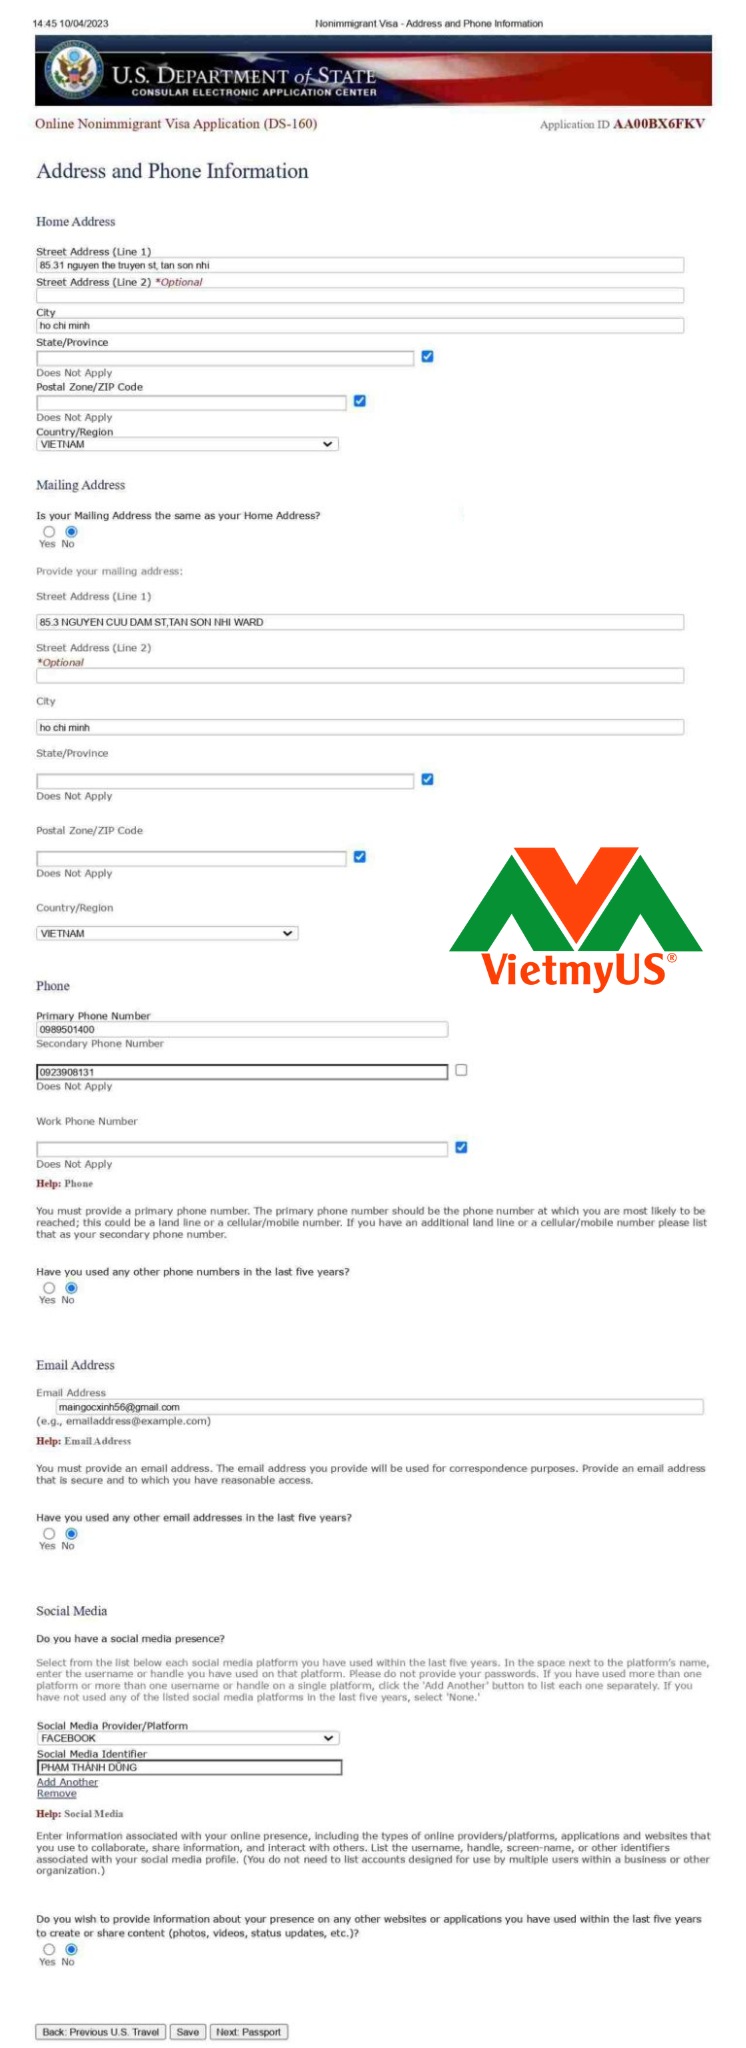 Hướng dẫn làm visa Mỹ chi tiết, mới nhất, đầy đủ nhất tại VietmyUS